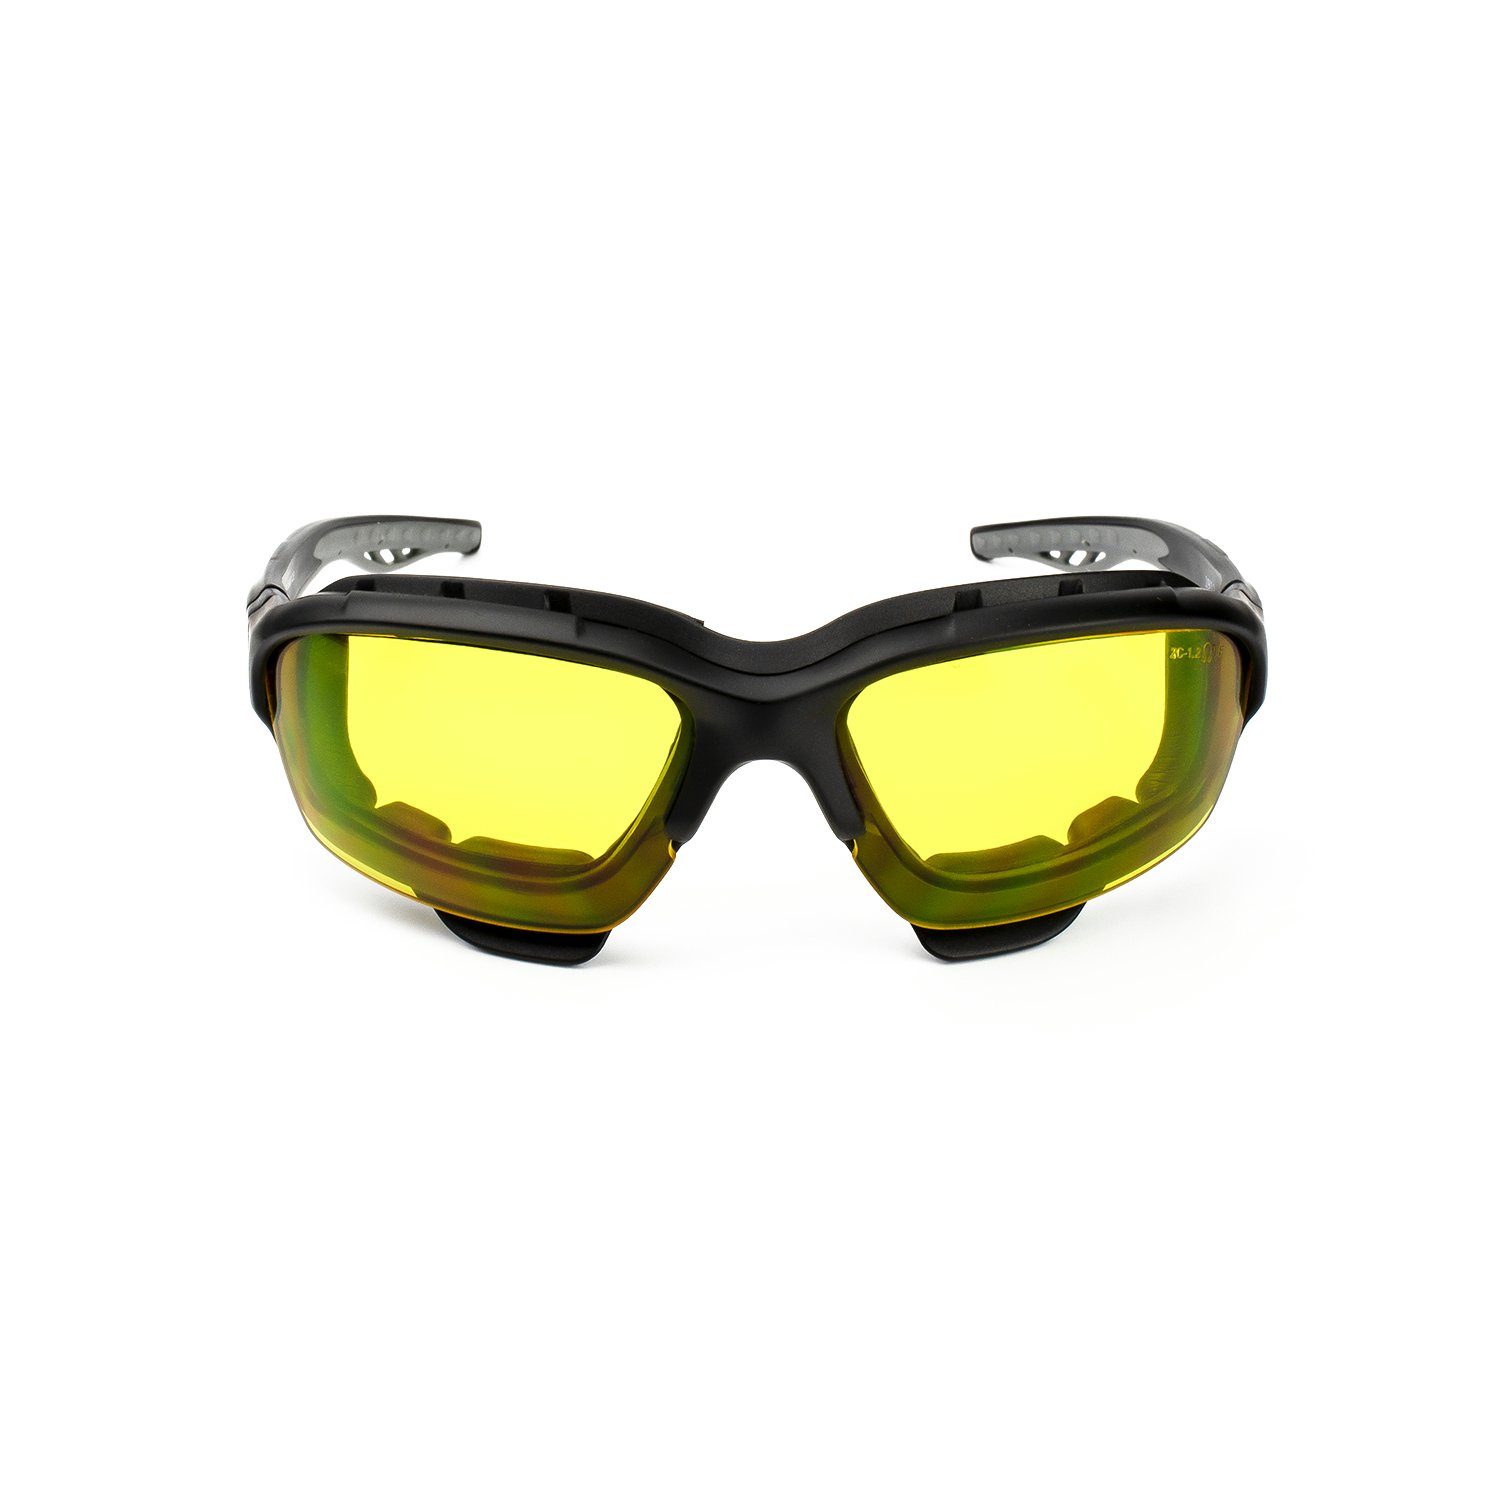 SA Ampreys 880, Avacore Gelb Arbeitsschutzbrille mit Filter UV400